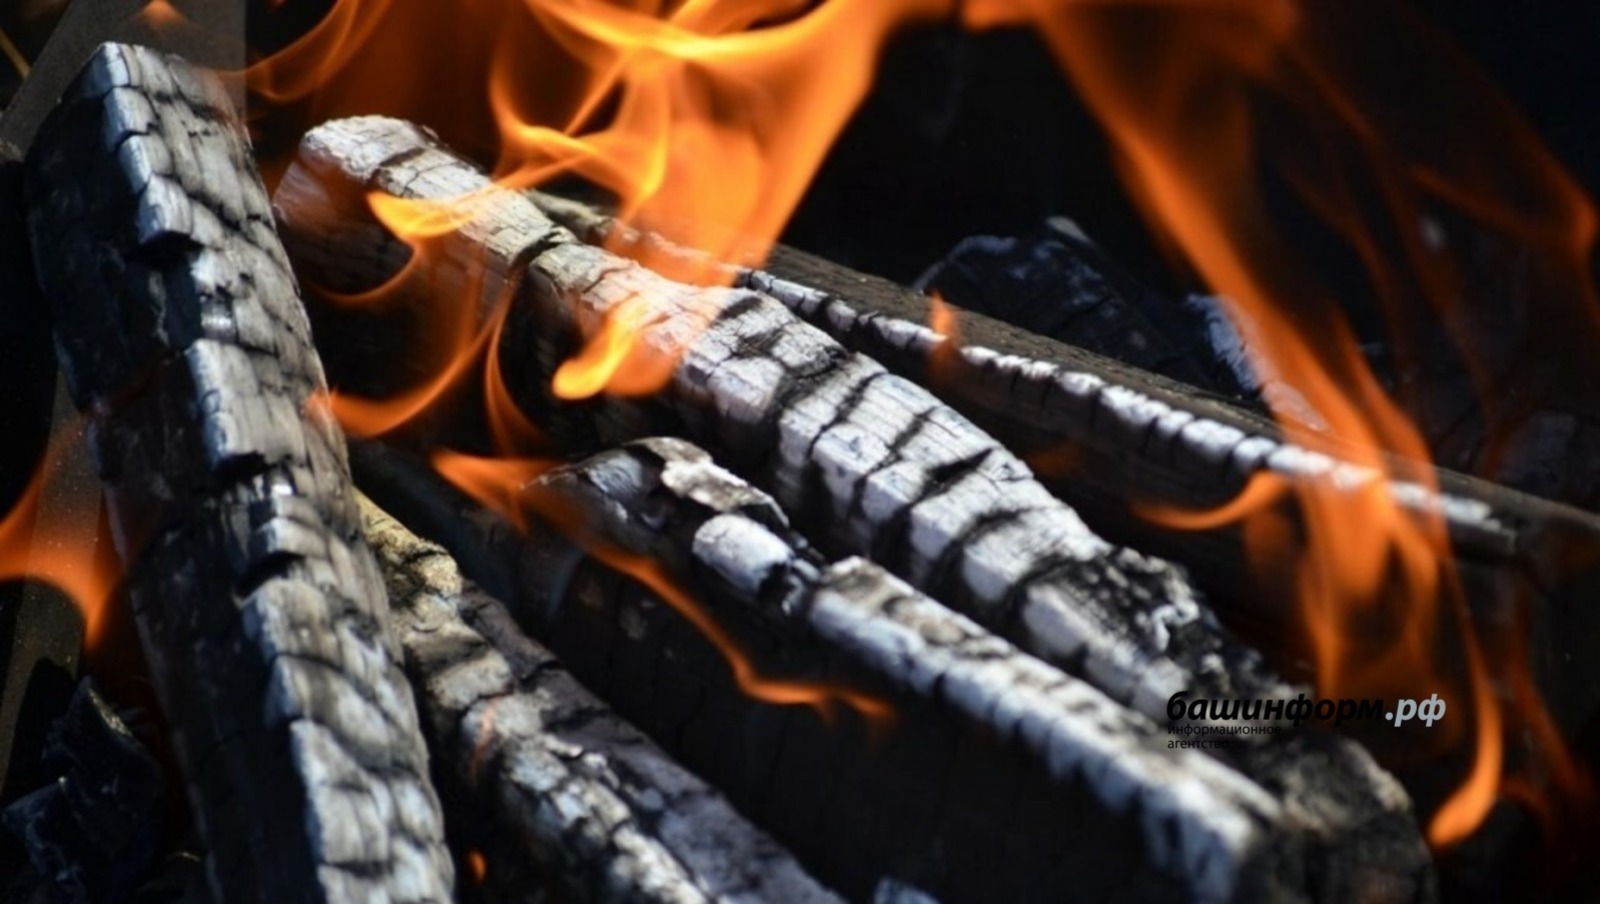 Неисправная отопительная печь – источник пожара!